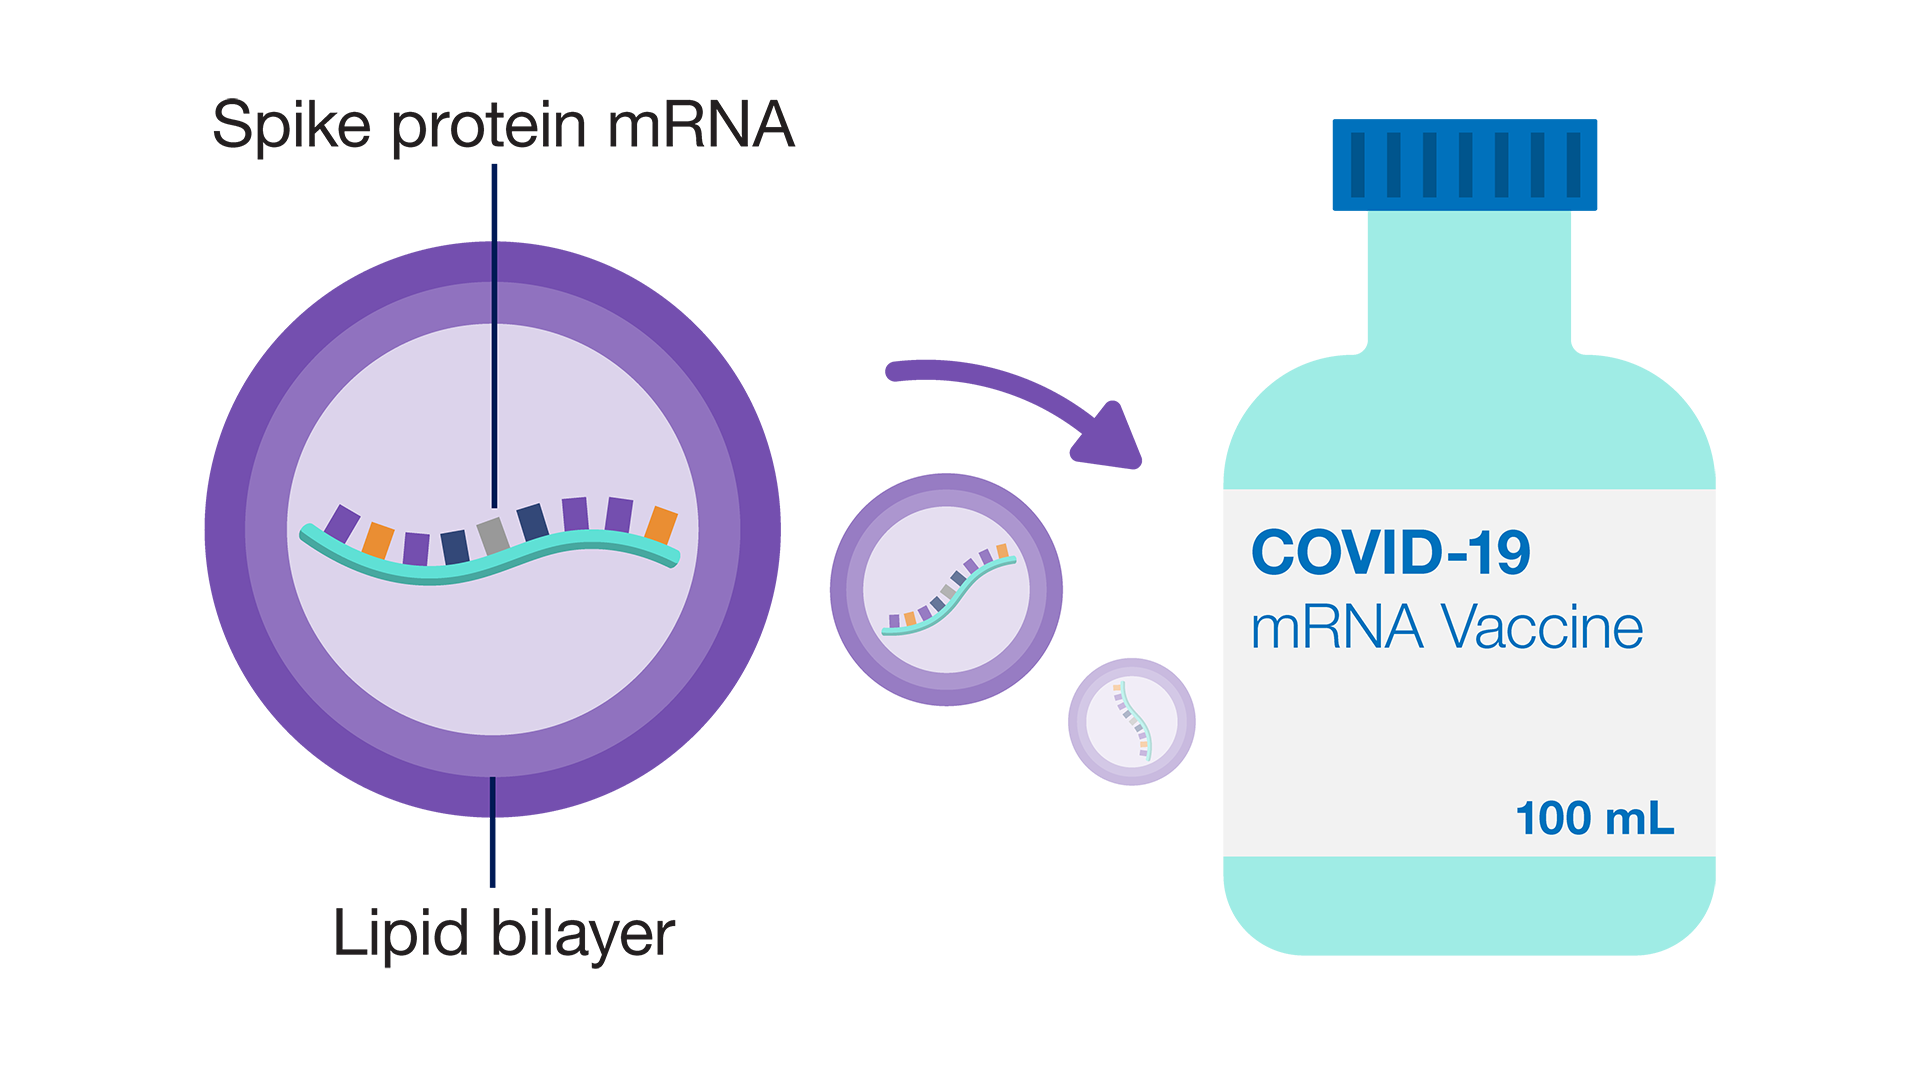 Spike proteinleri koruyan lipid çift tabakası;  COVID-19 mRNA aşısı